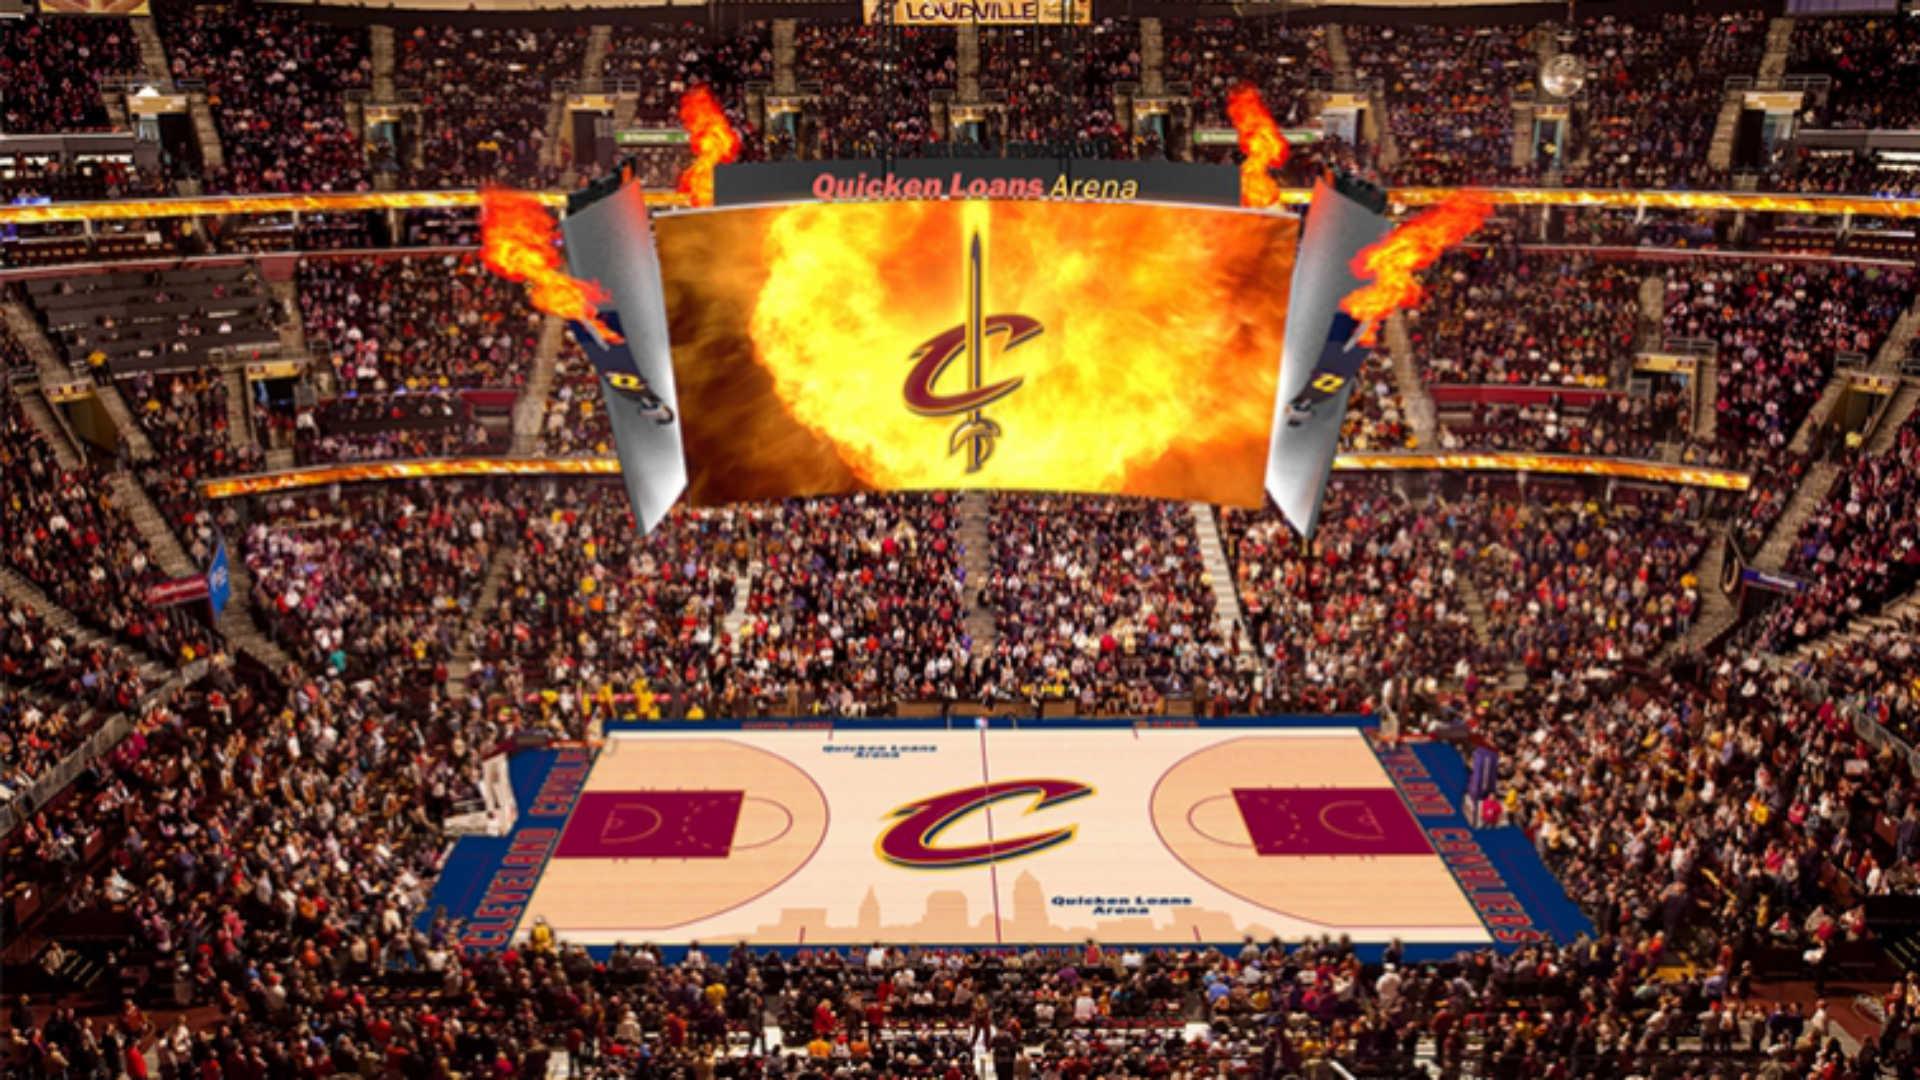 Cavaliers to unveil new fiery scoreboard in season opener. NBA